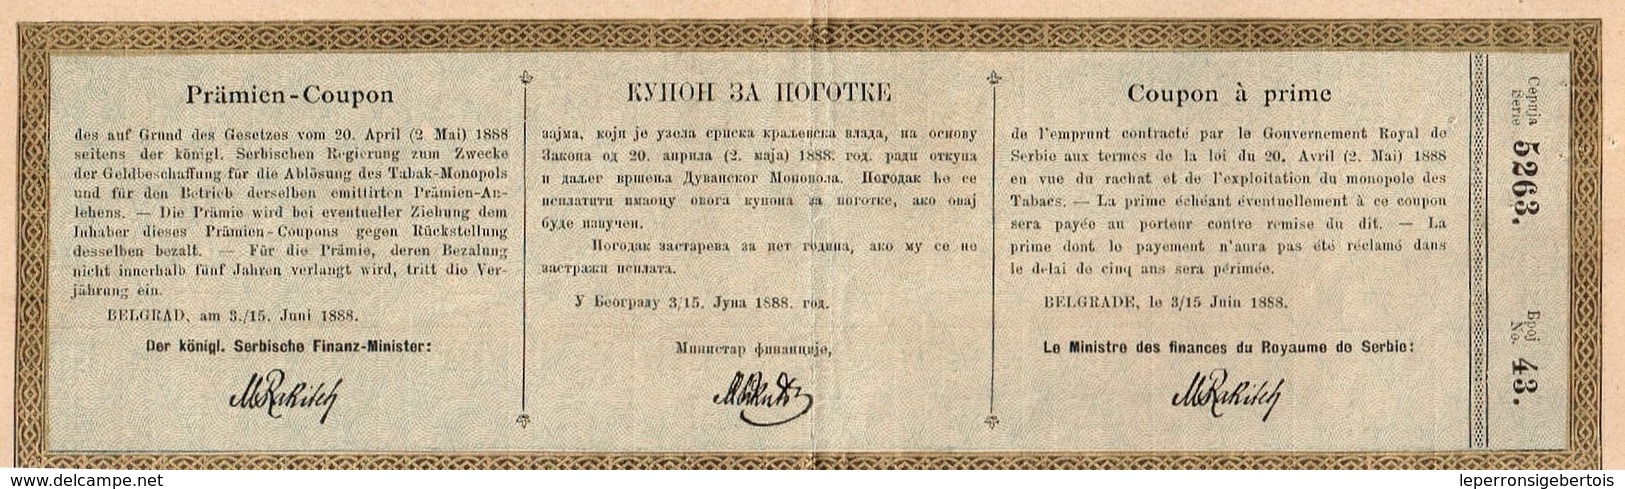 Obligation Ancienne - Emprunt à Primes Du Royaume De Serbie - Titre De 1888 - A - C